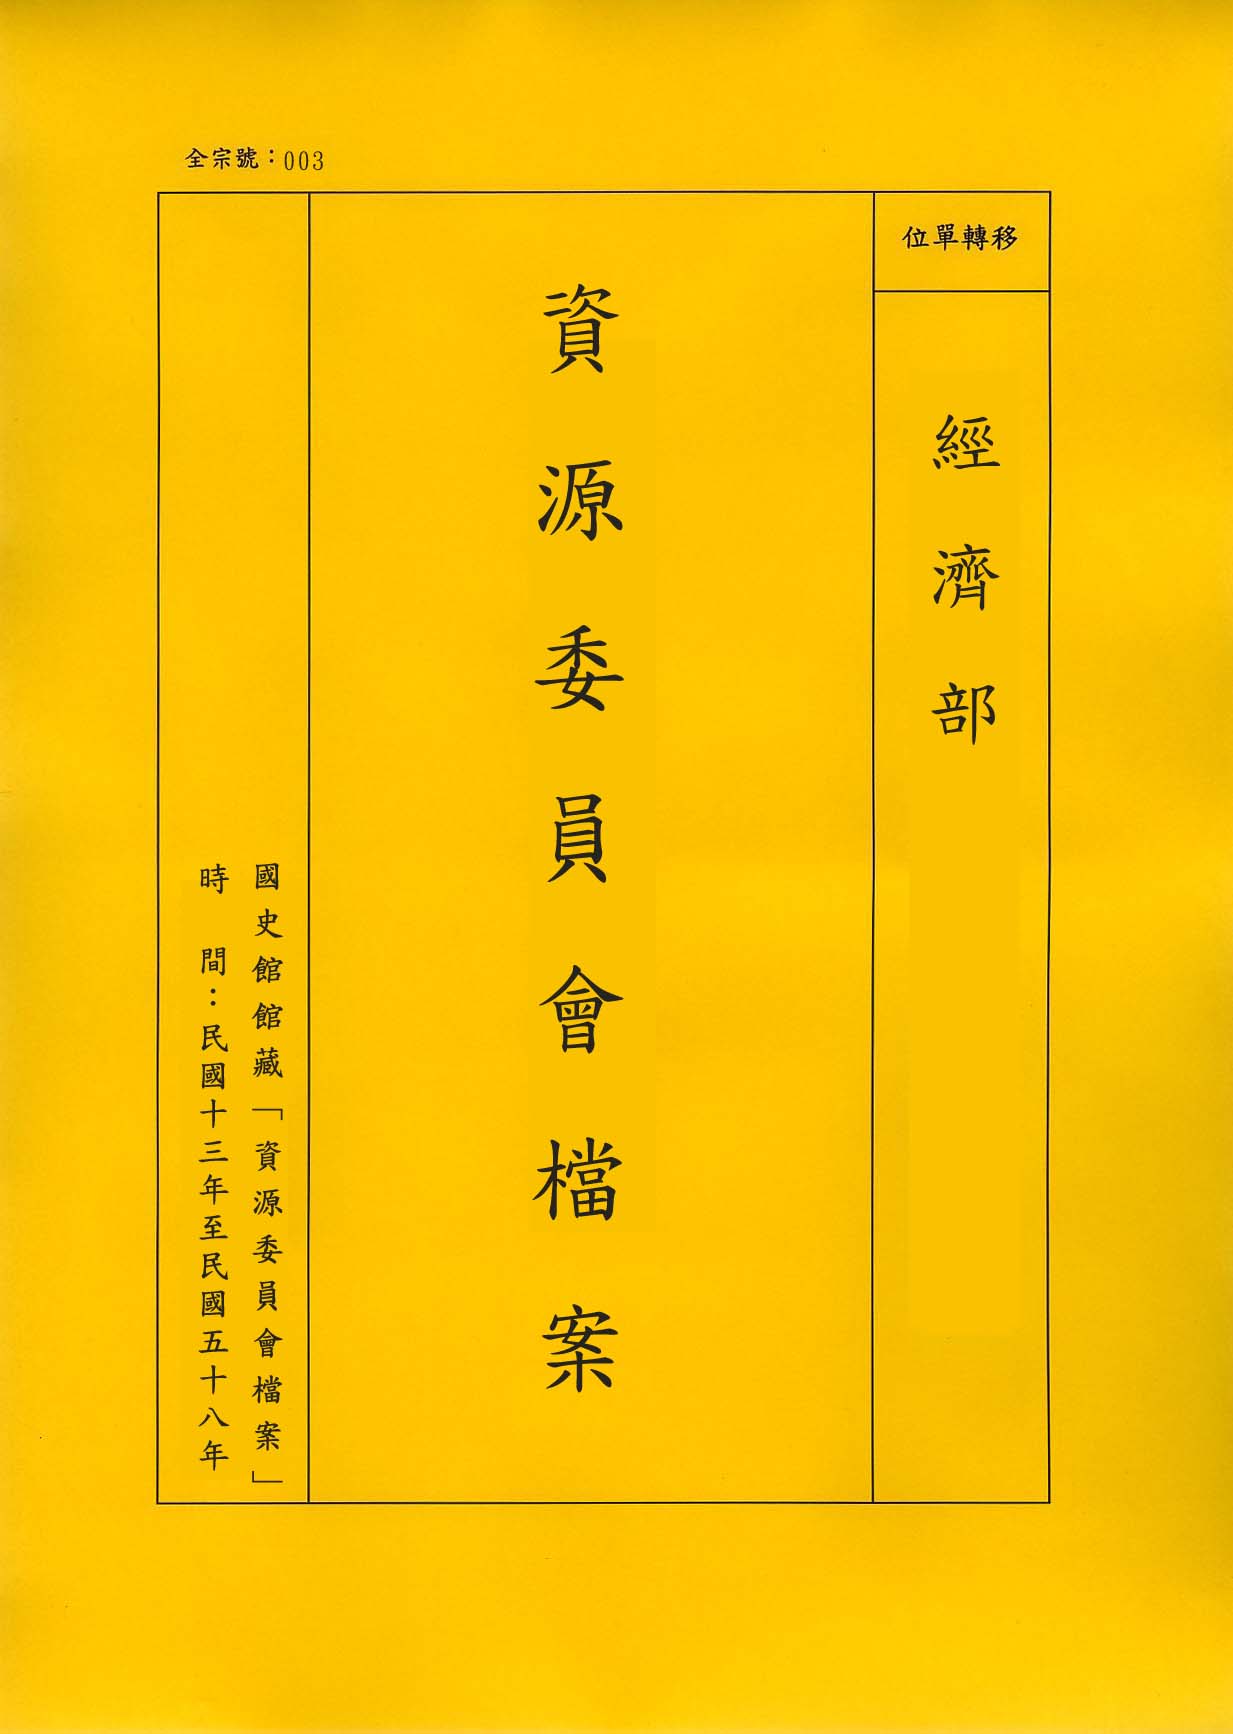 卷名:歐陽藻函件─十一至十二月T. T. Eoyang s Chronological File, O(003-020600-0176)